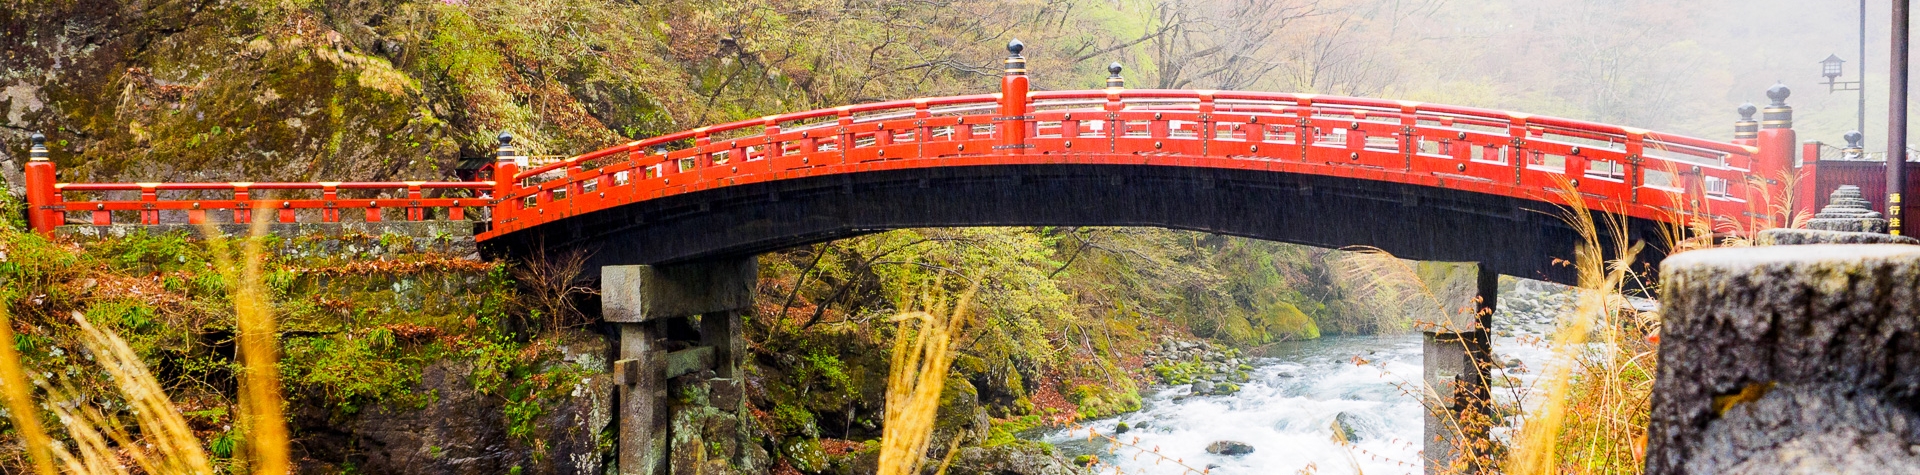 ญี่ปุ่นไปรอบๆ: ไปมรดกโลกที่นิกโก้ในวันฝนพรำ